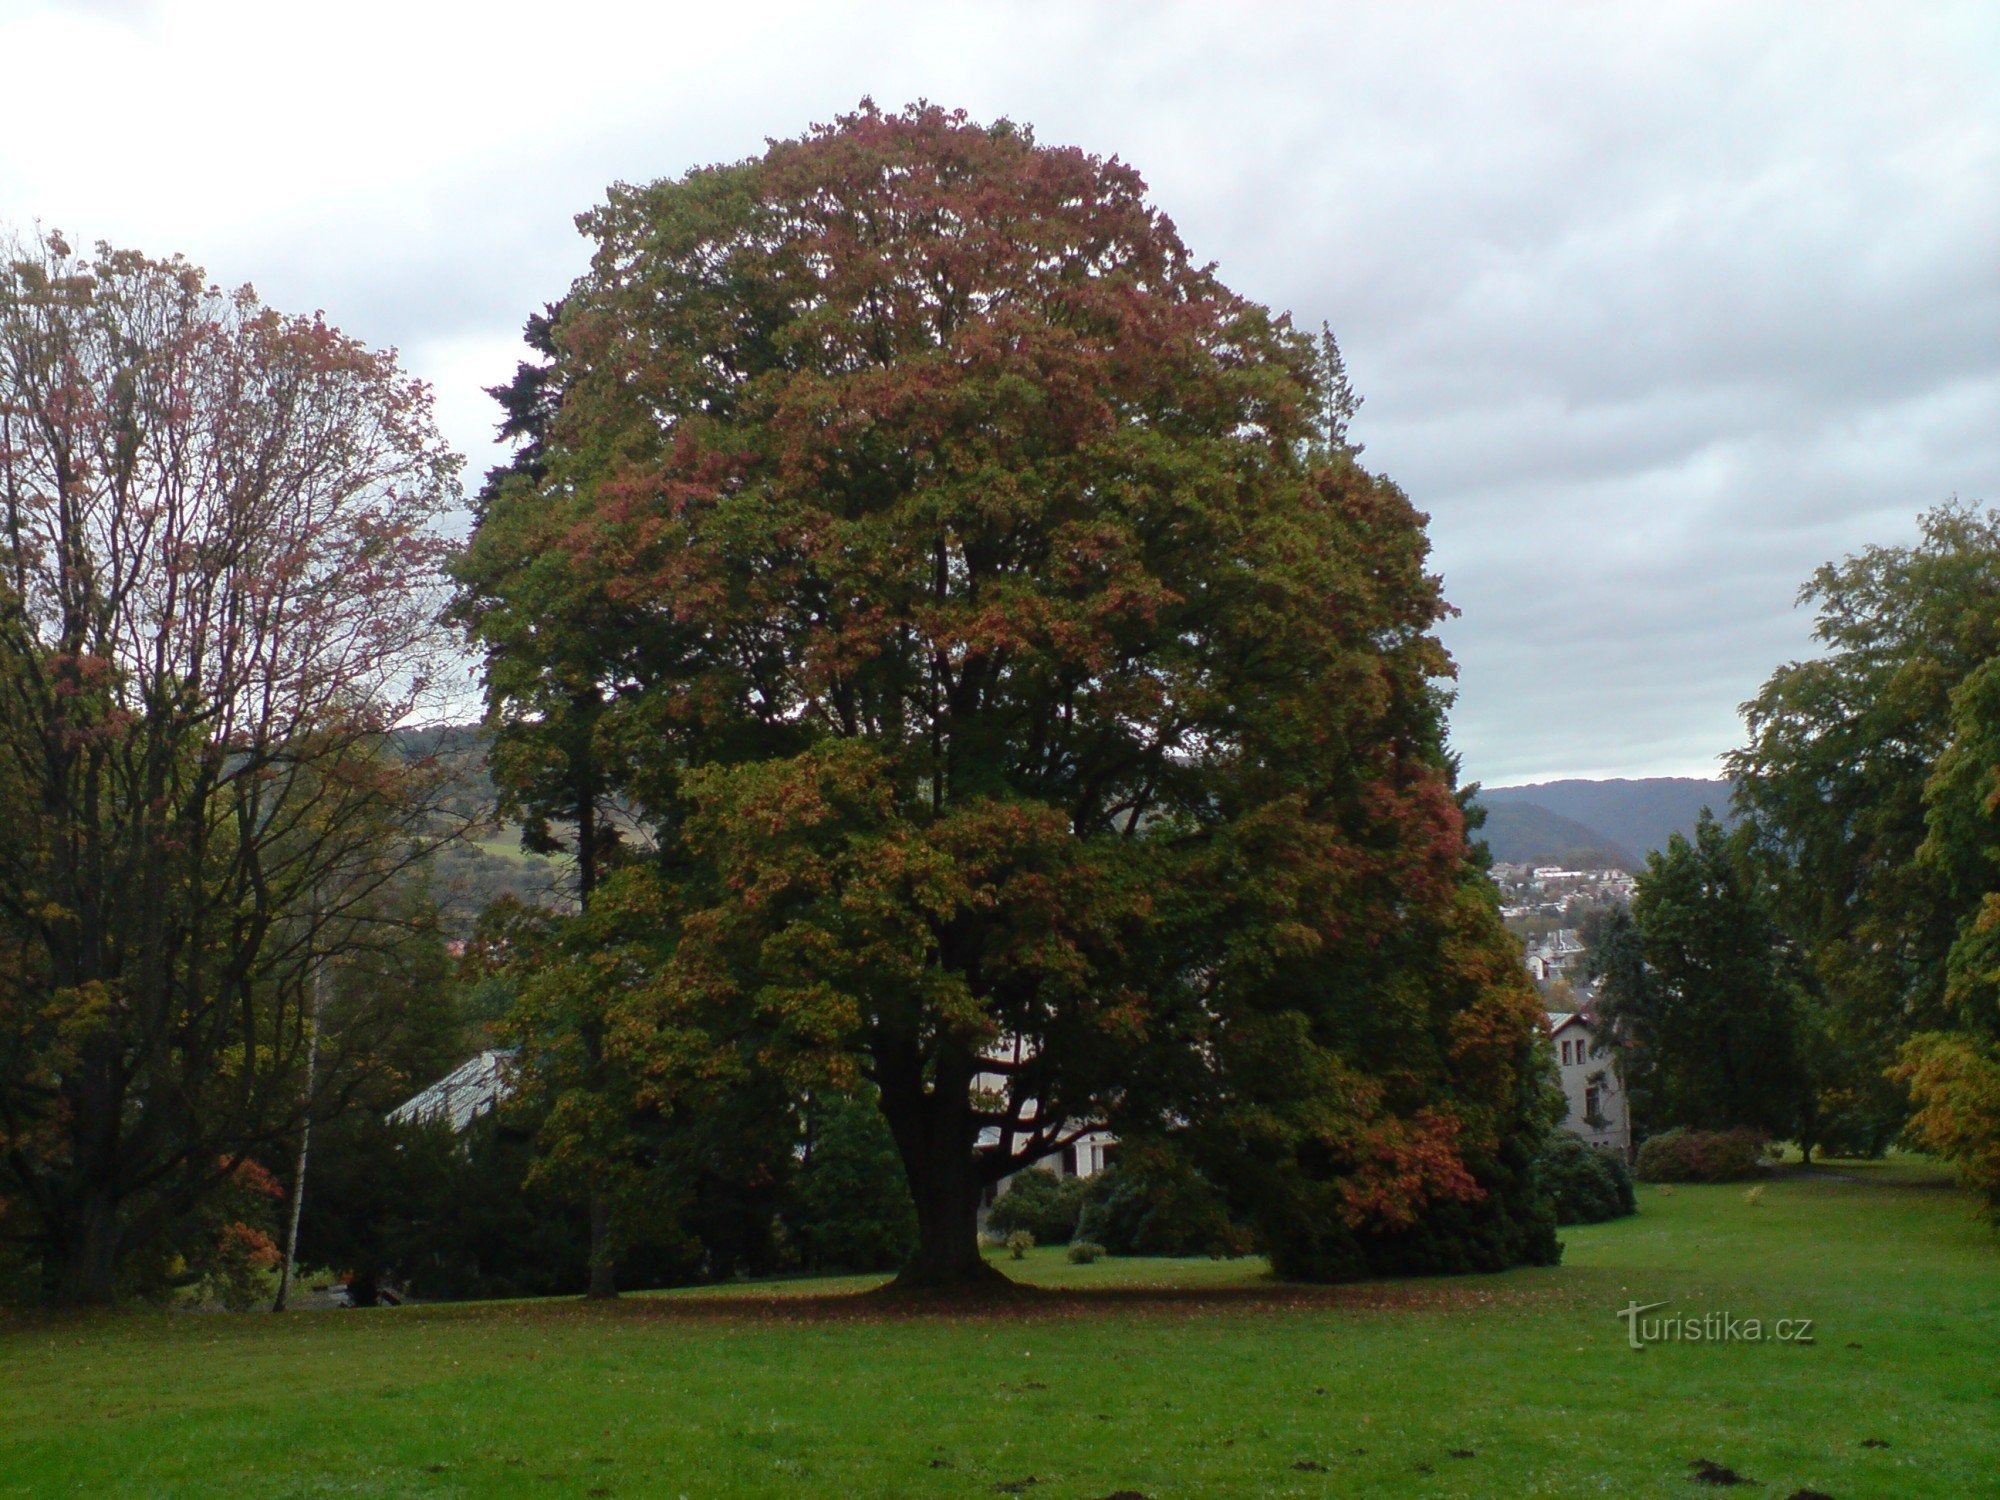 unul dintre numeroșii copaci frumoși din parcul castelului